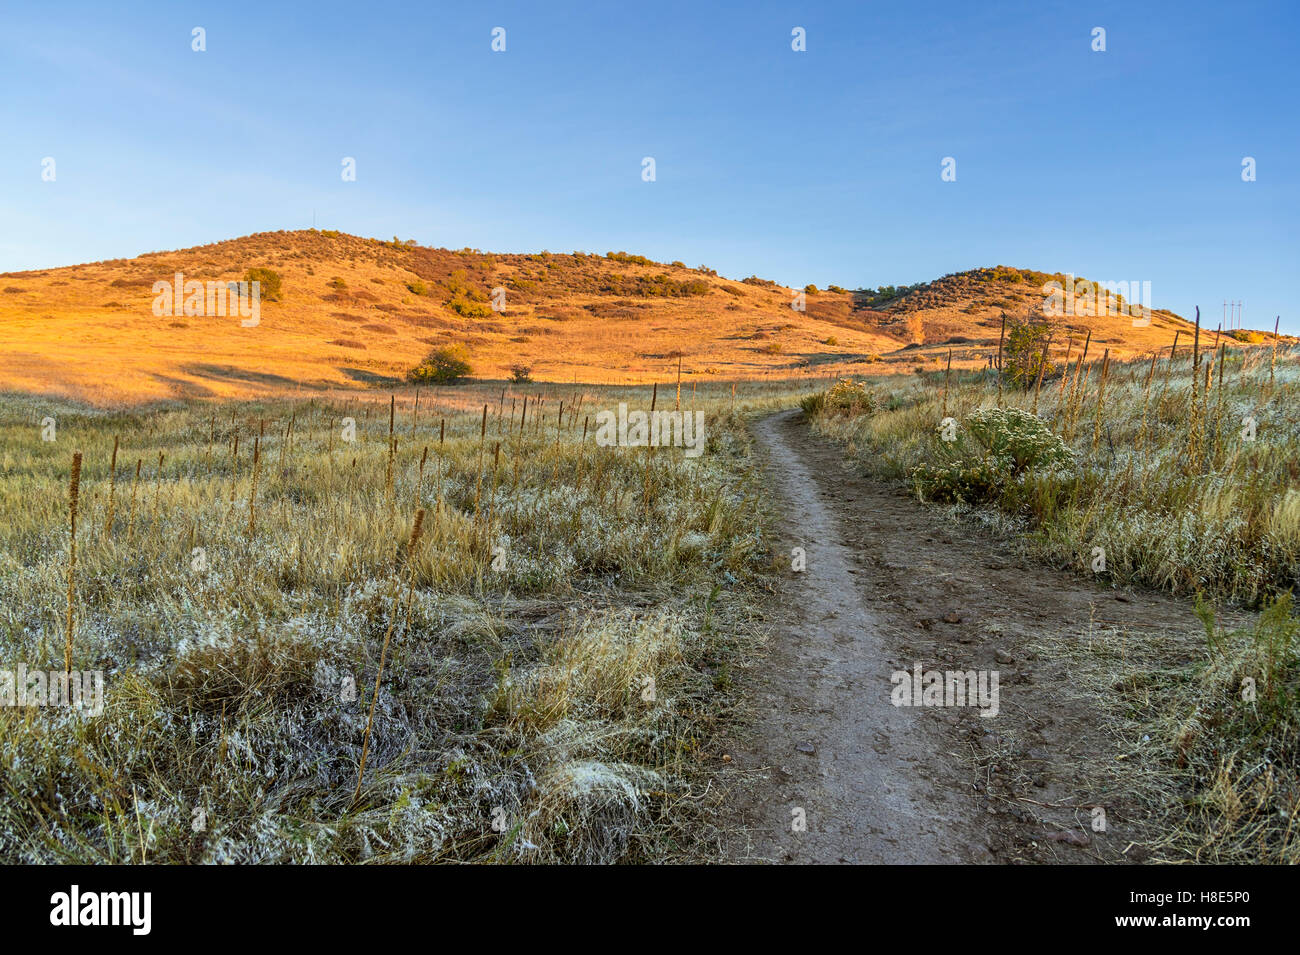 Route de terre Sentier à travers des montagnes du désert, California, USA Banque D'Images